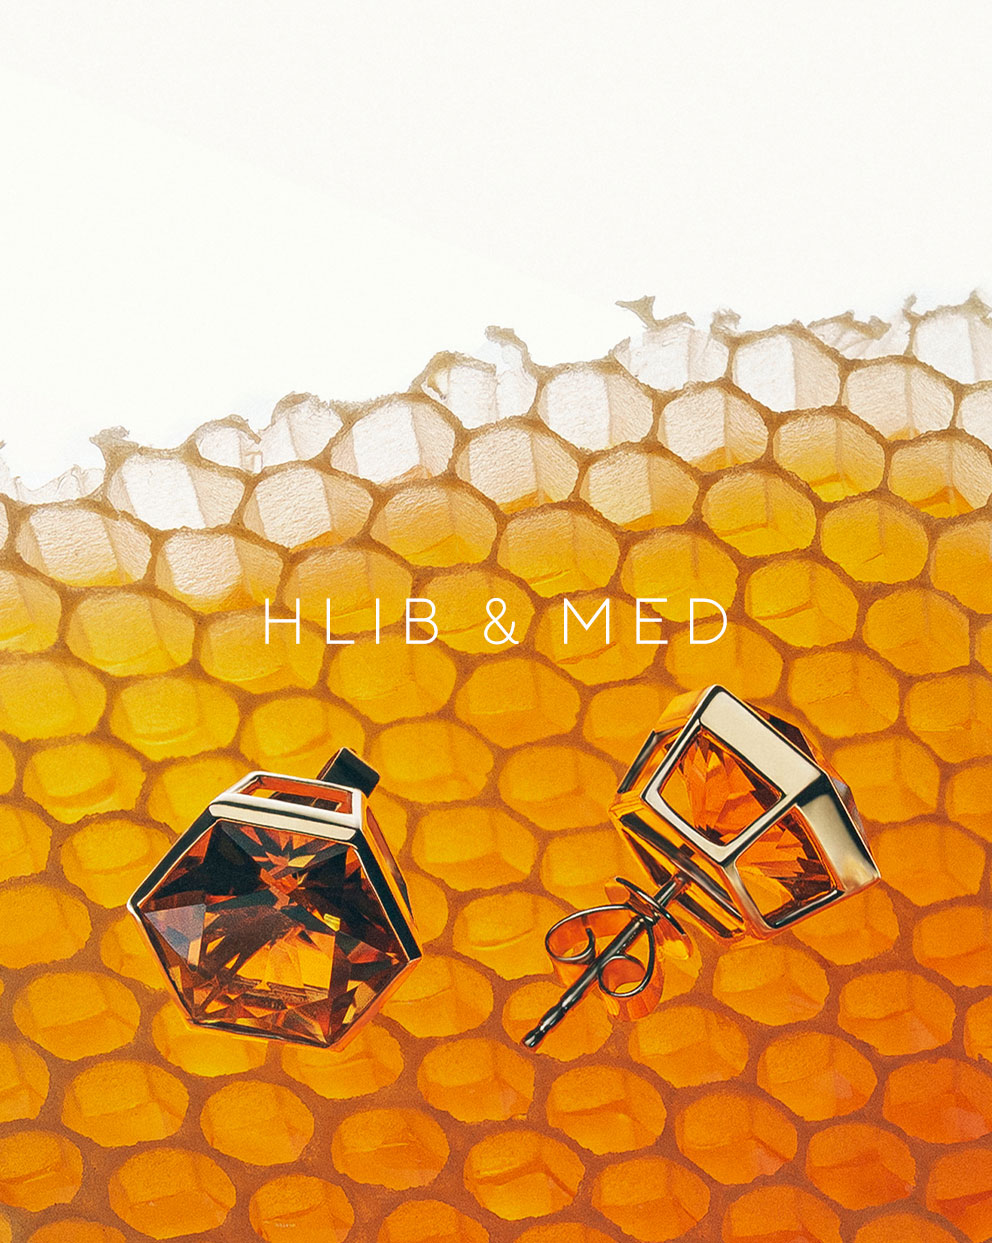 HLIB & MED